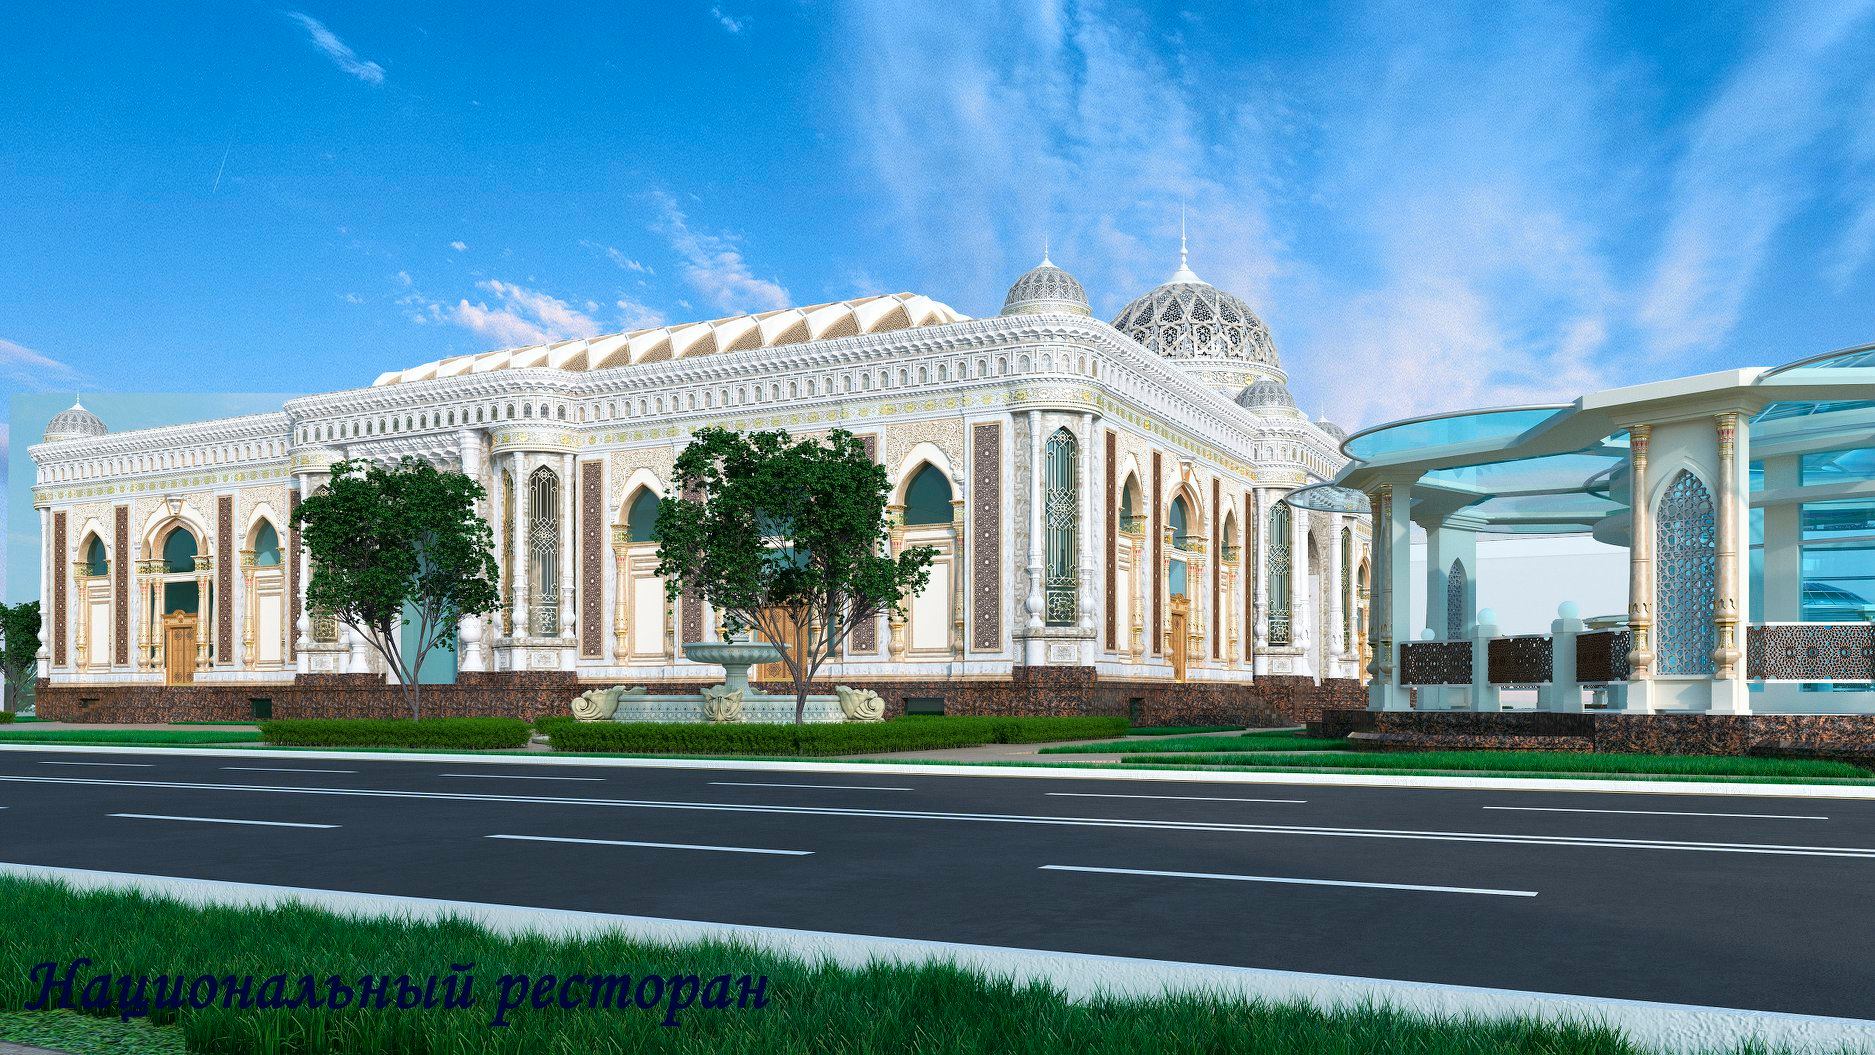 Мэр Душанбе построит в столице три роскошных ресторана